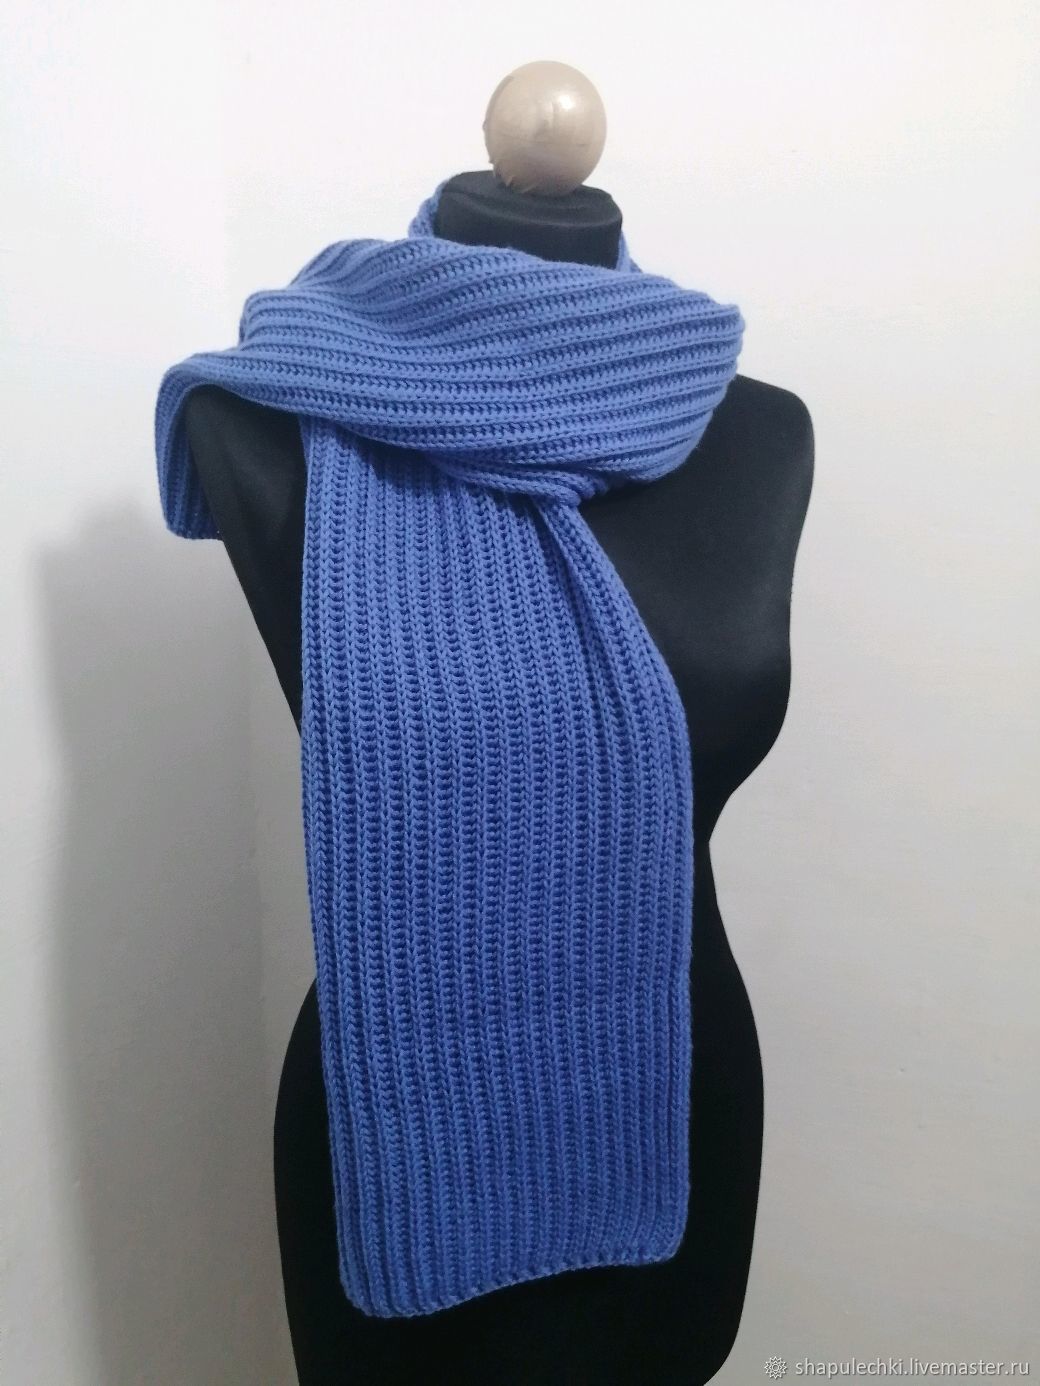 Многоцветный шарф-платок с веерными мотивами